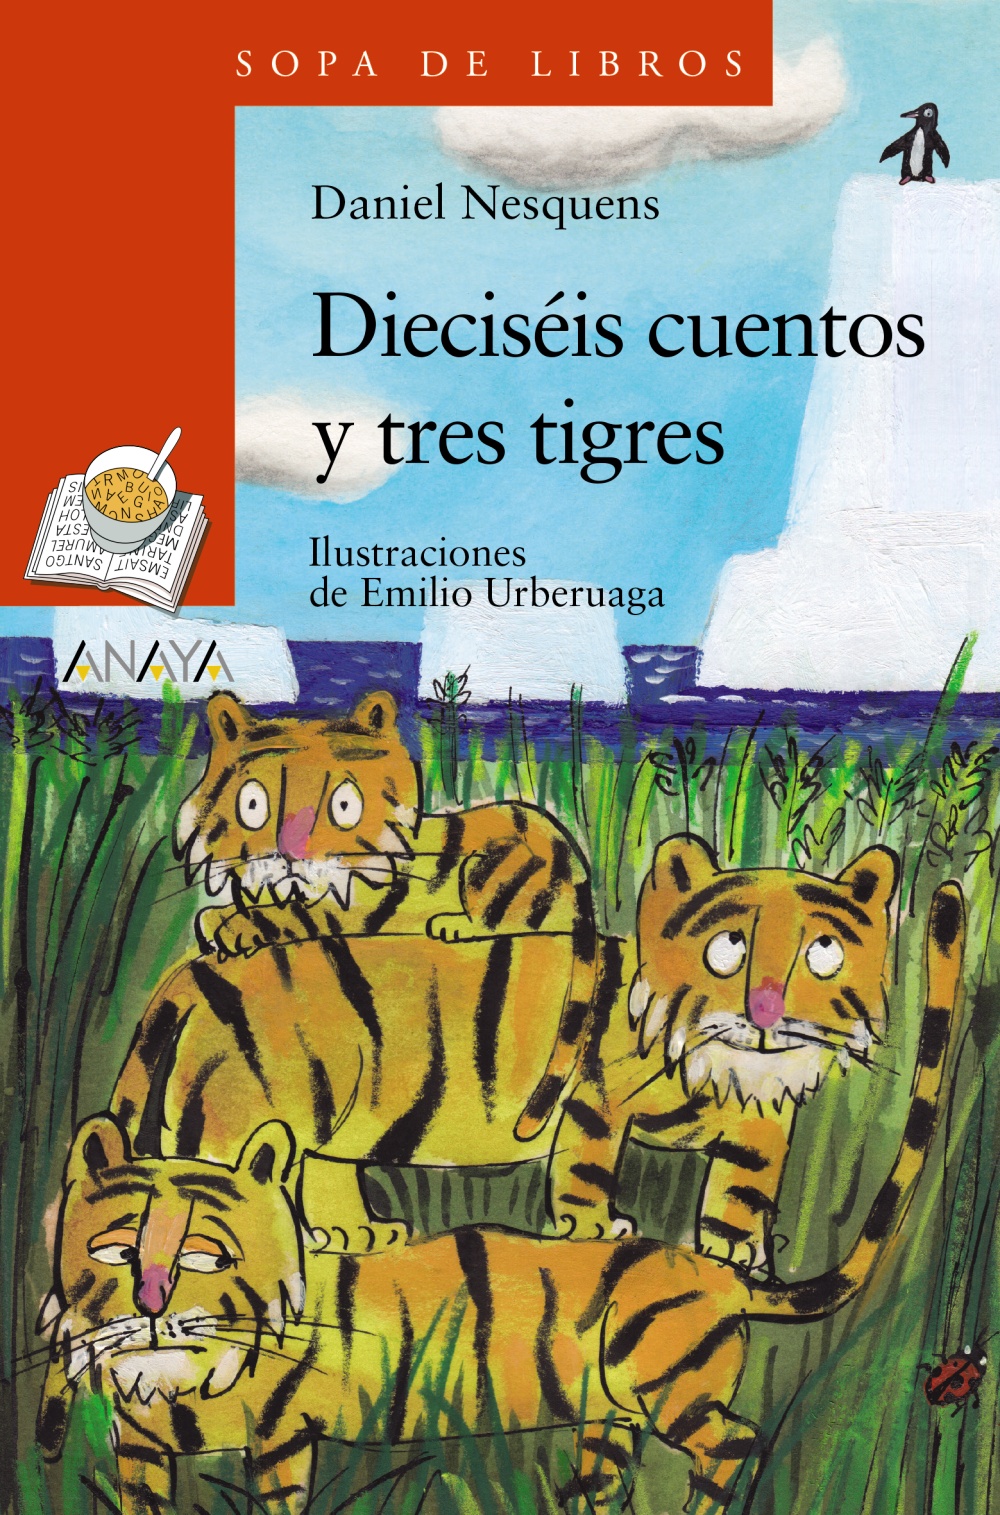 dieciseis-cuentos-y-tres-tigres-sopa-de-libros